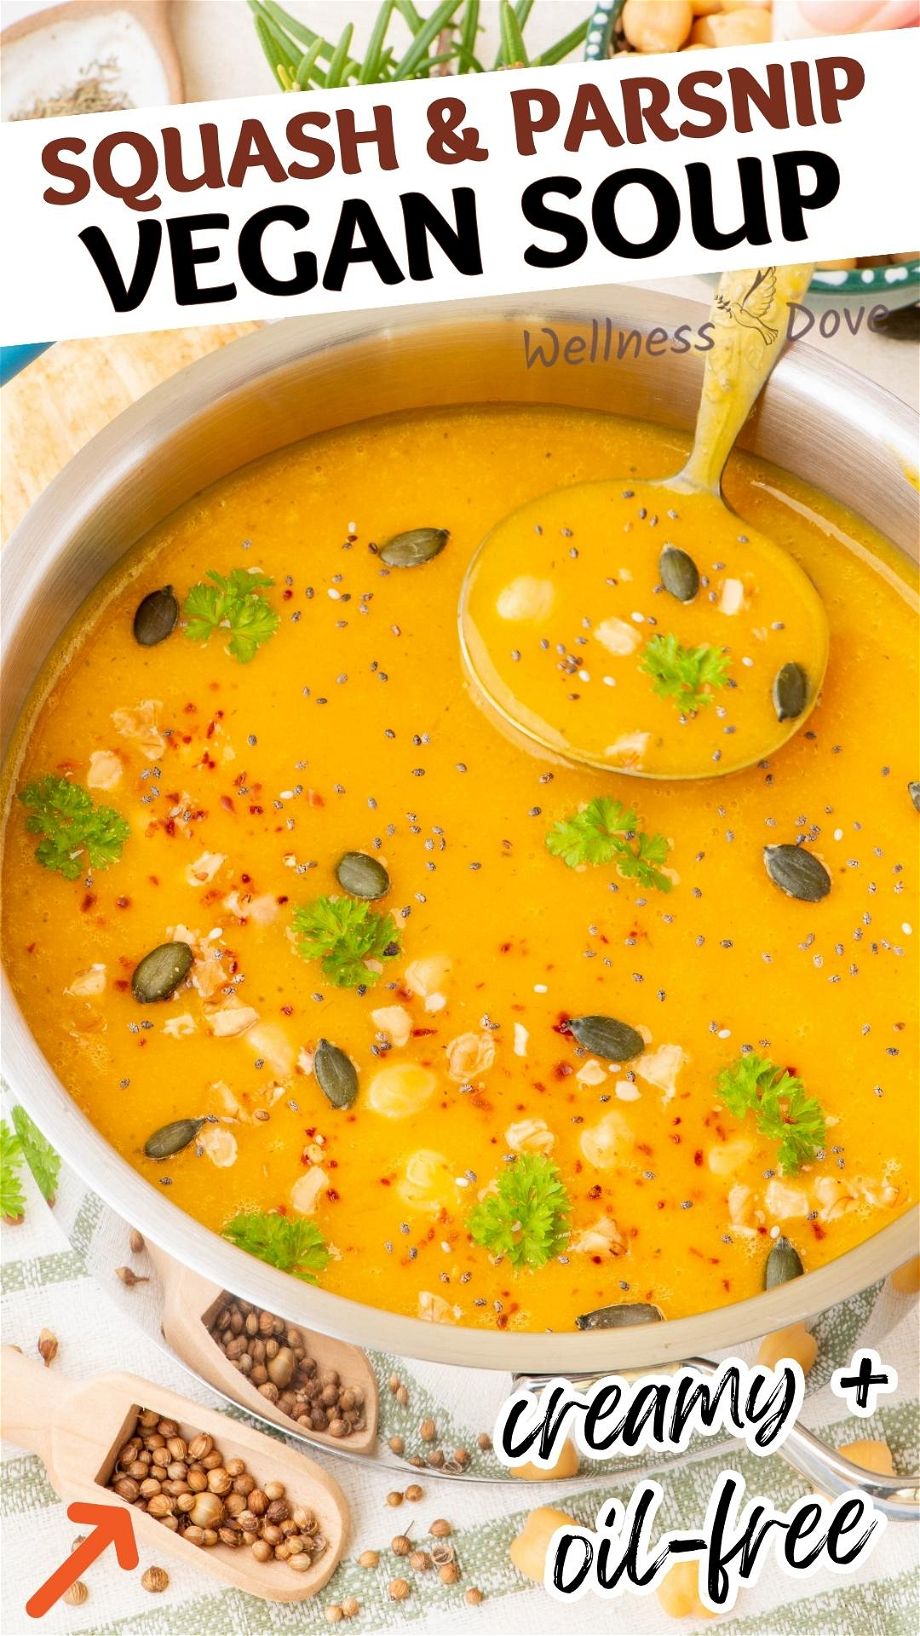 Squash & Parsnip Vegan Soup pinterest image